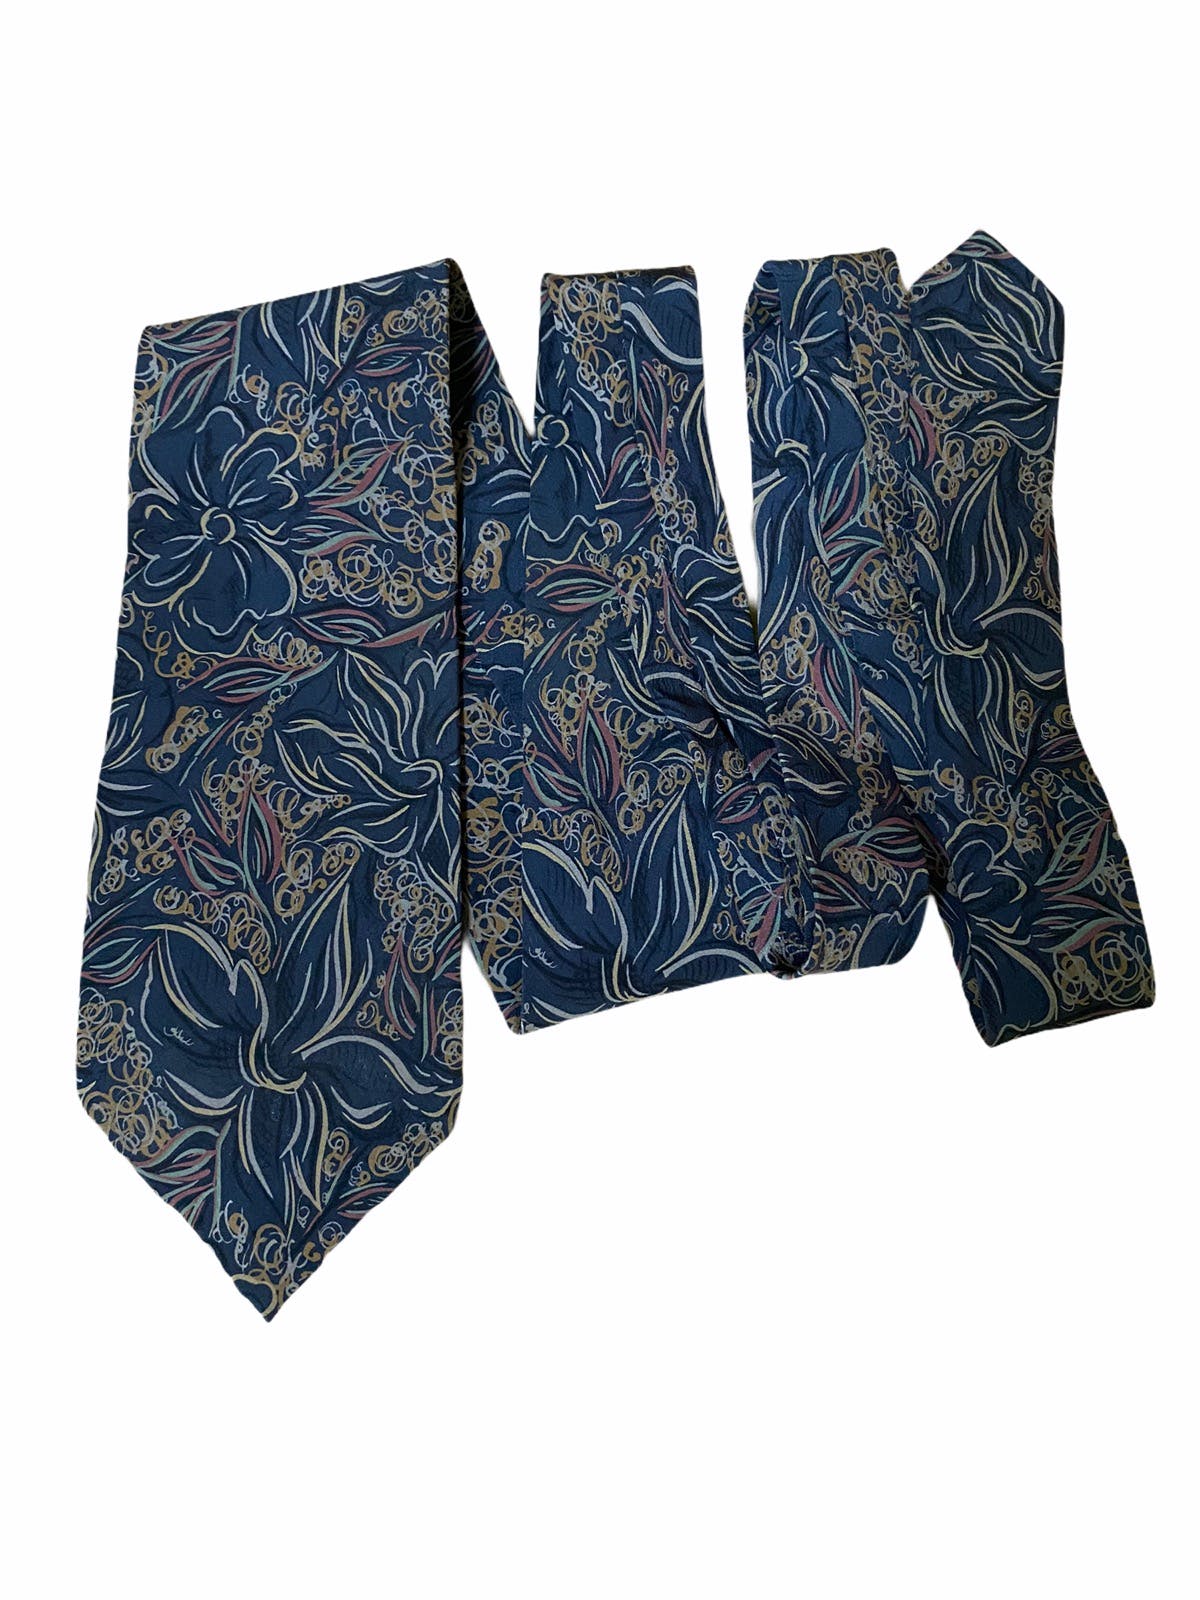 Vintage Valentino Flowers Overprints Silk Necktie - 1